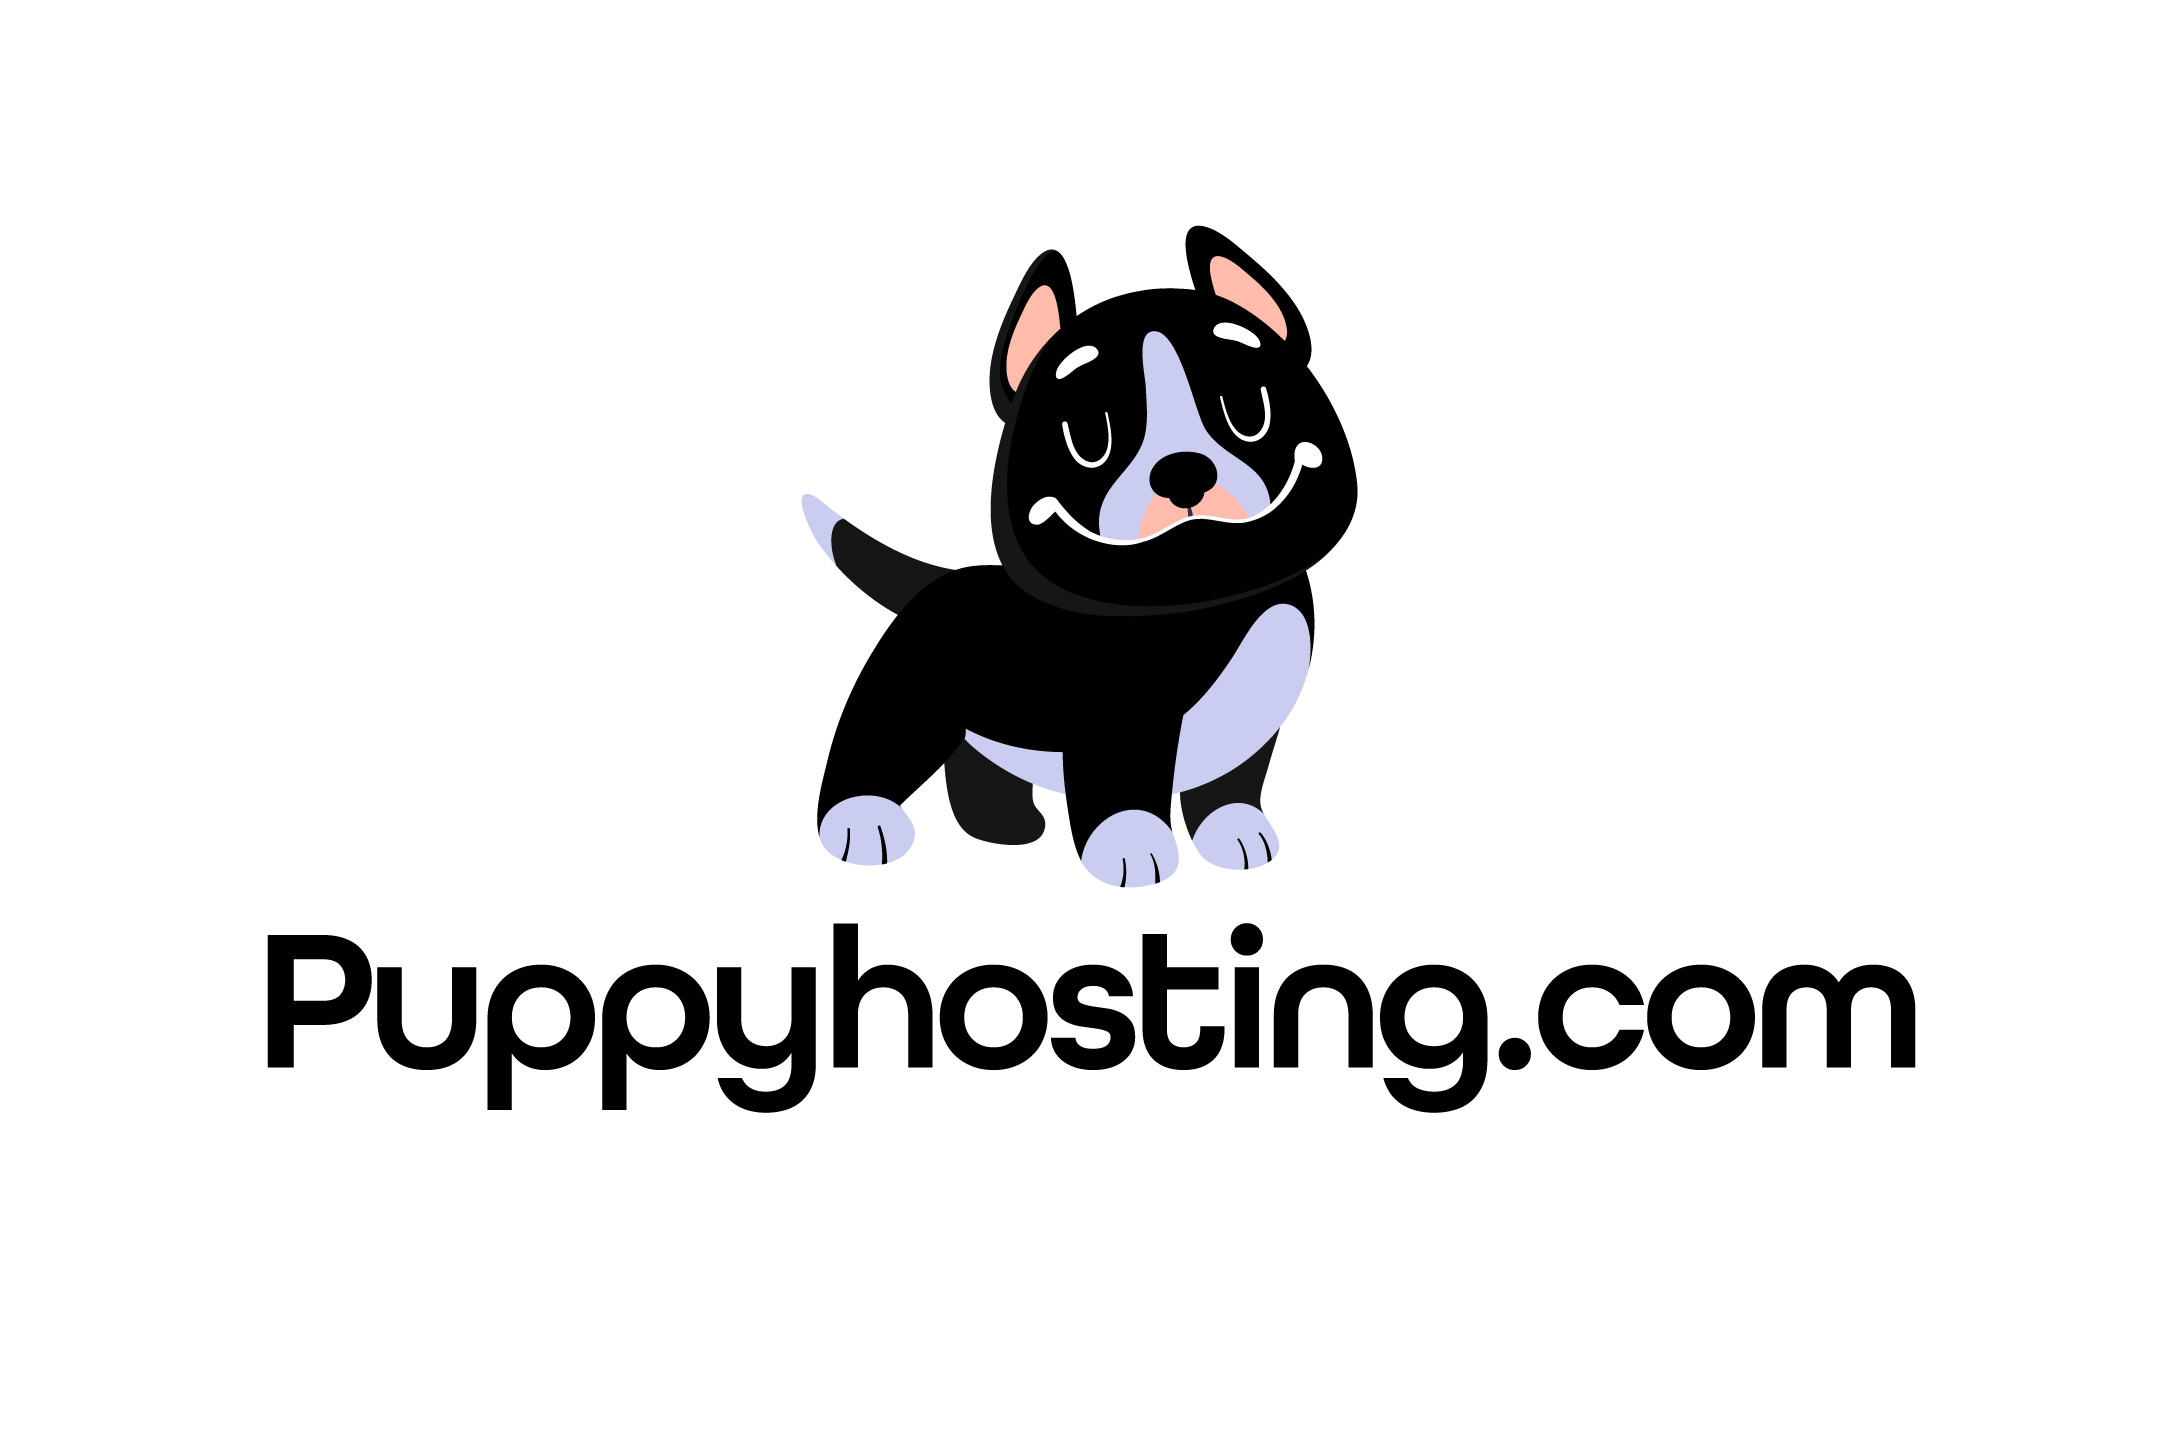 PuppyHosting.com